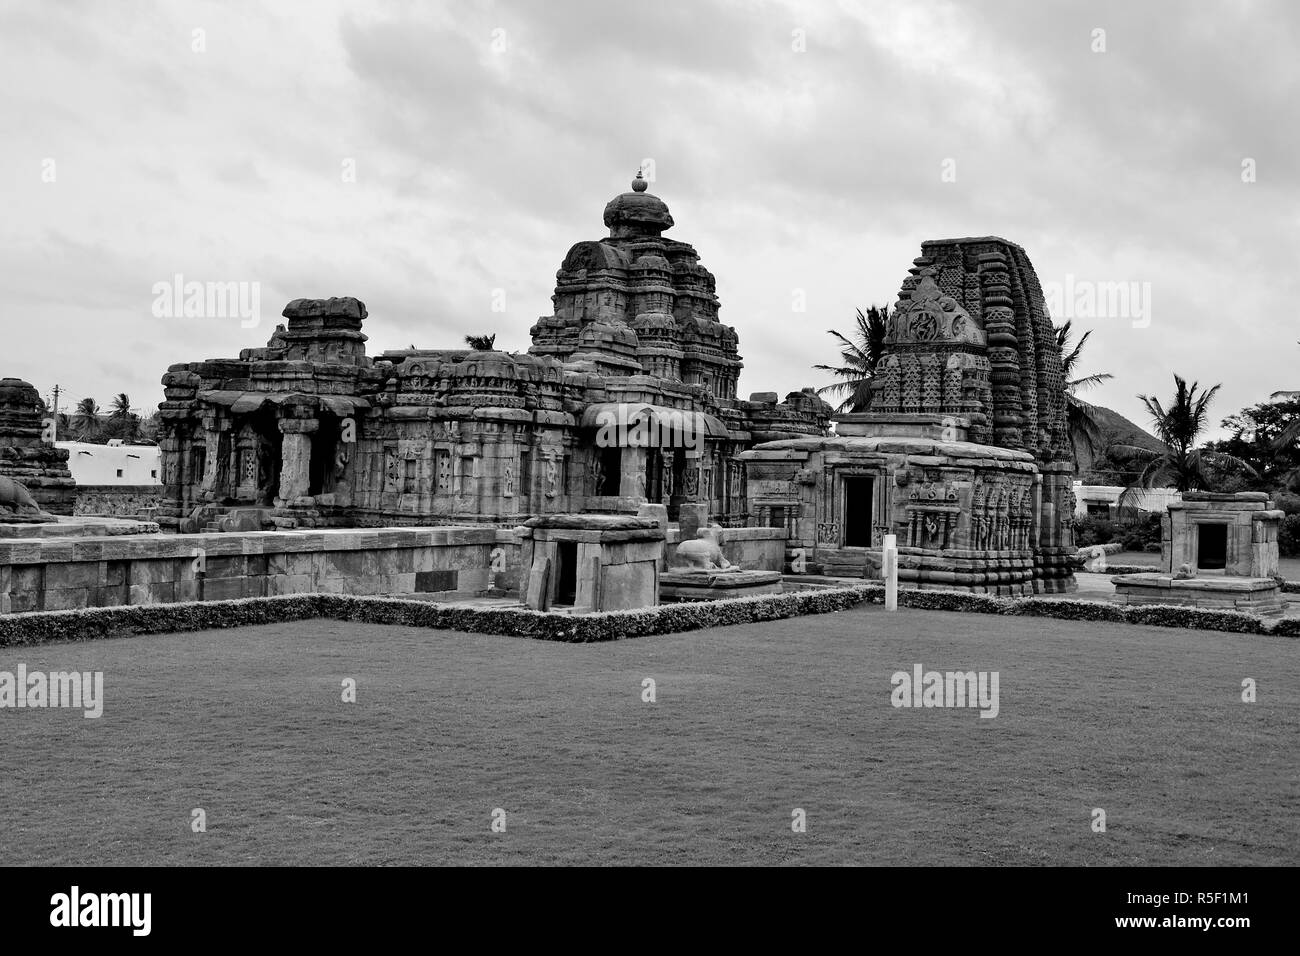 Geschnitzte Tempel, Pattadakal Tempelkomplex, UNESCO eingeschrieben Weltkulturerbe mit 6. Und 7. Jahrhundert Hindu-und Jain Tempel, Karnataka, Indien Stockfoto